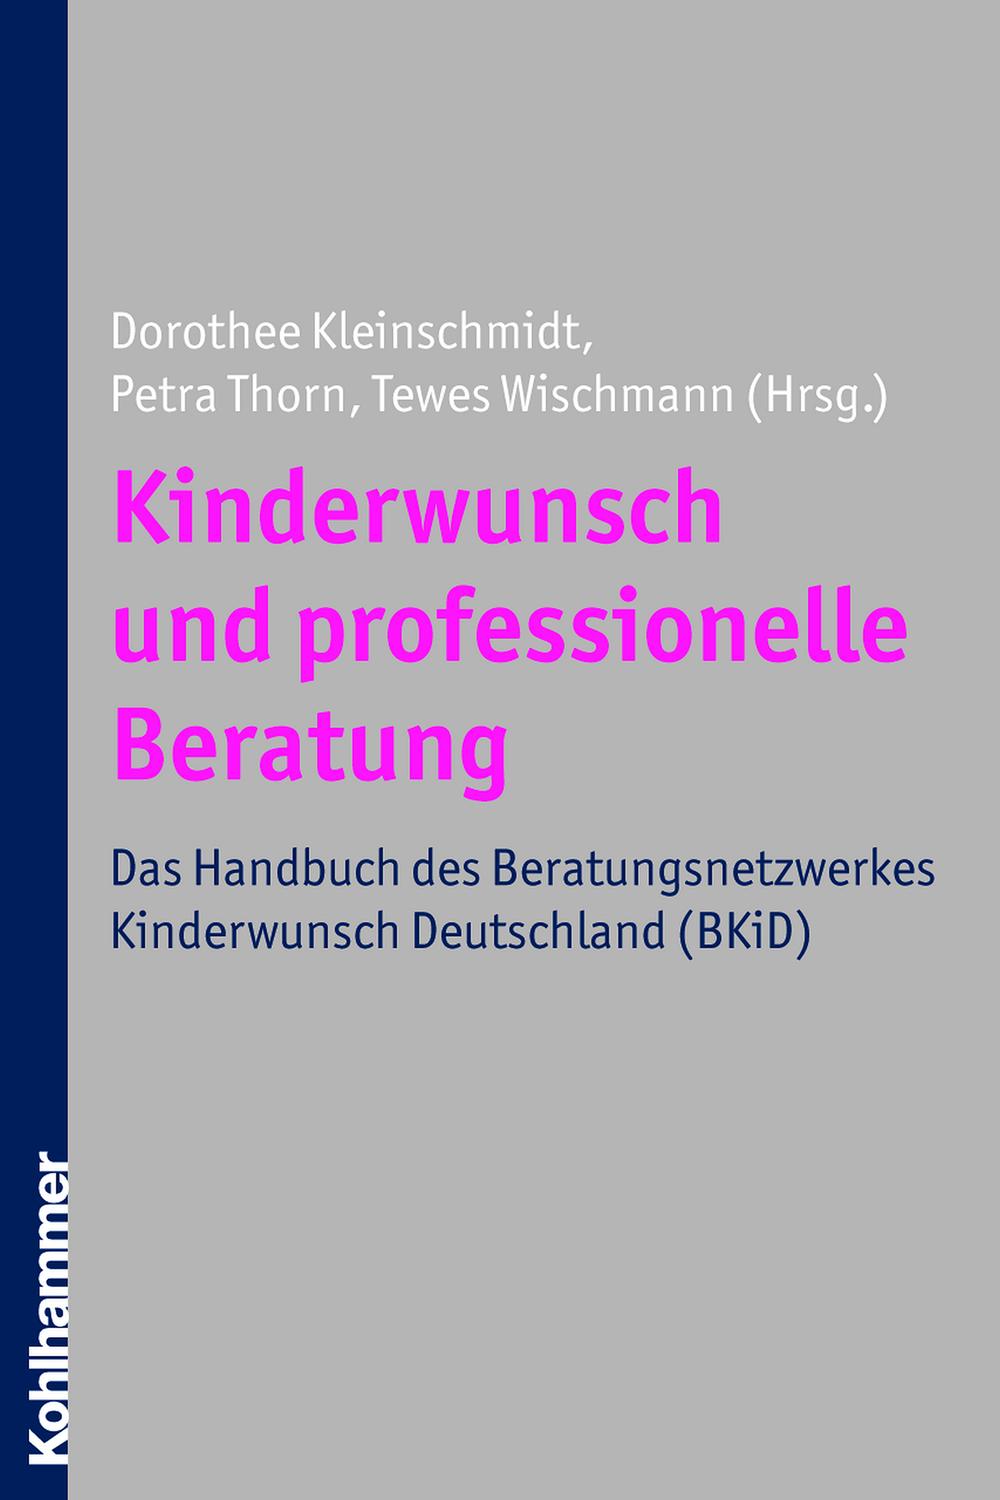 Kinderwunsch und professionelle Beratung - Dorothee Kleinschmidt, Petra Thorn, Tewes Wischmann